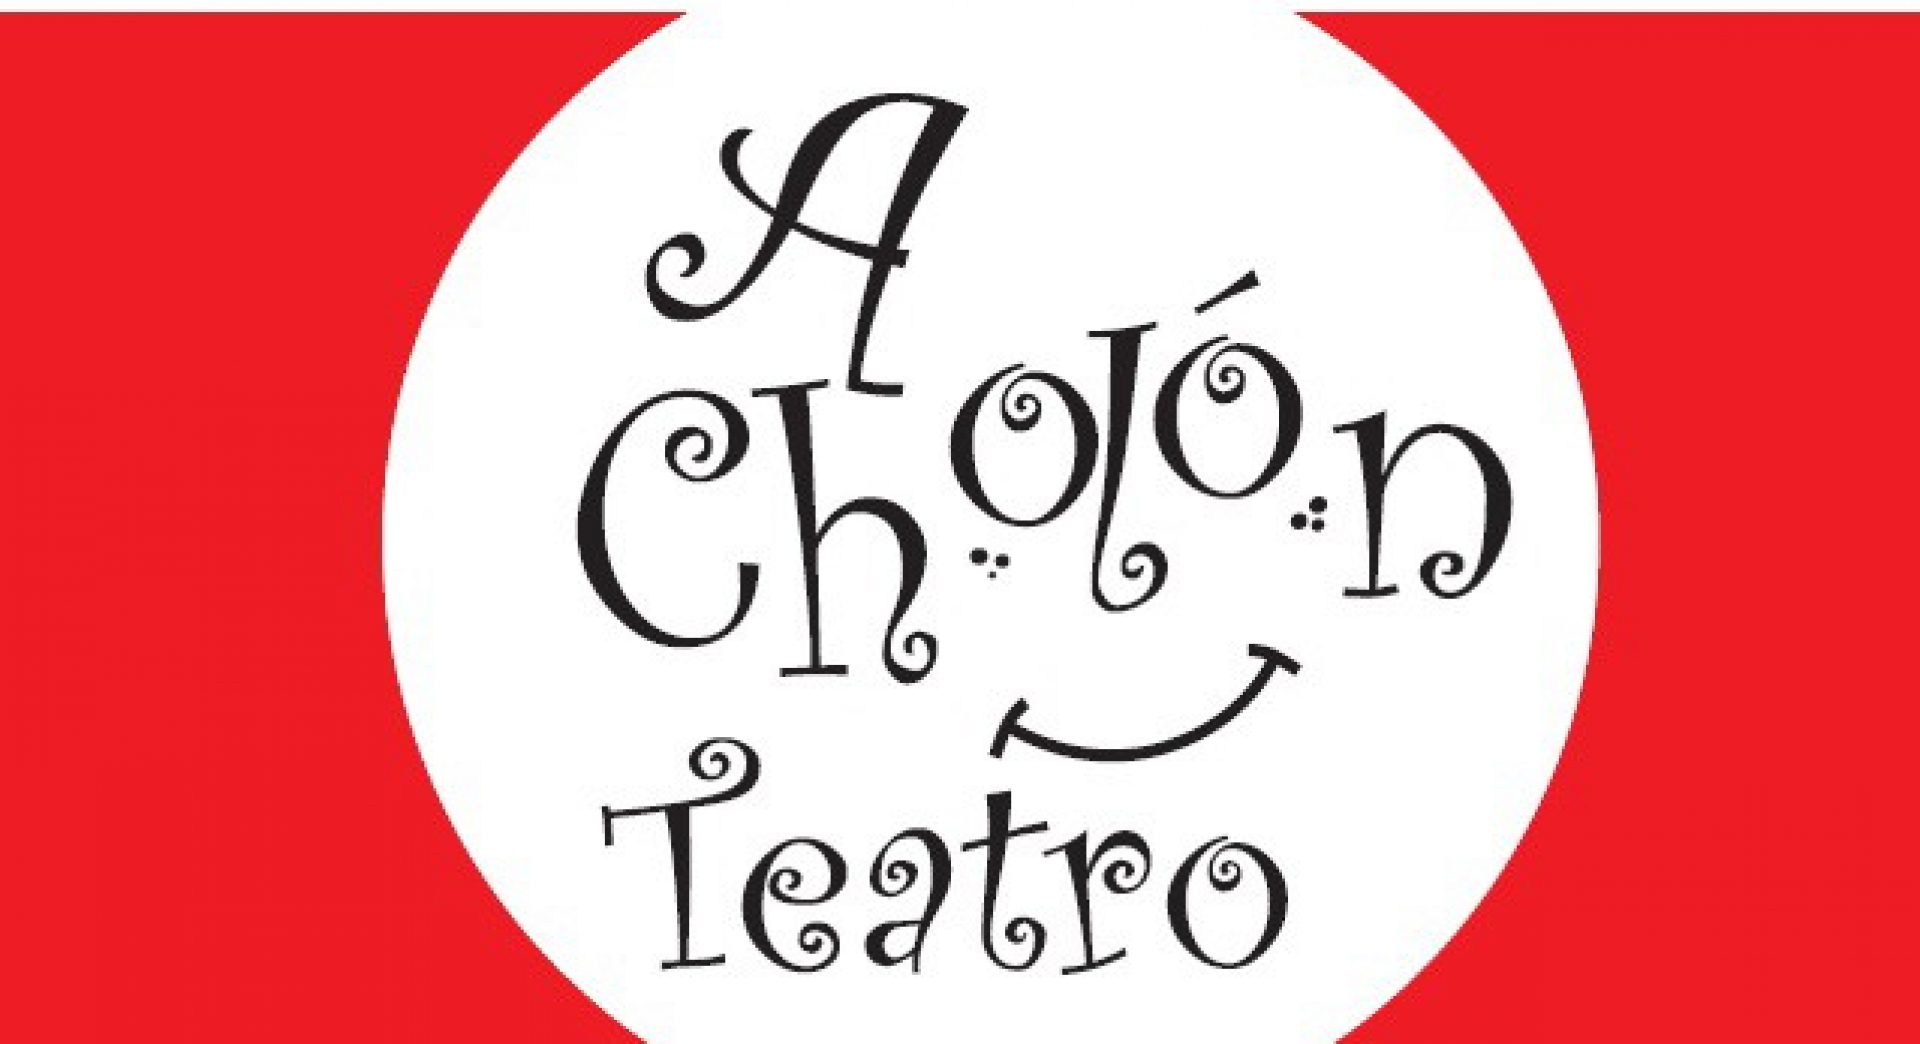 A Cholón Teatro